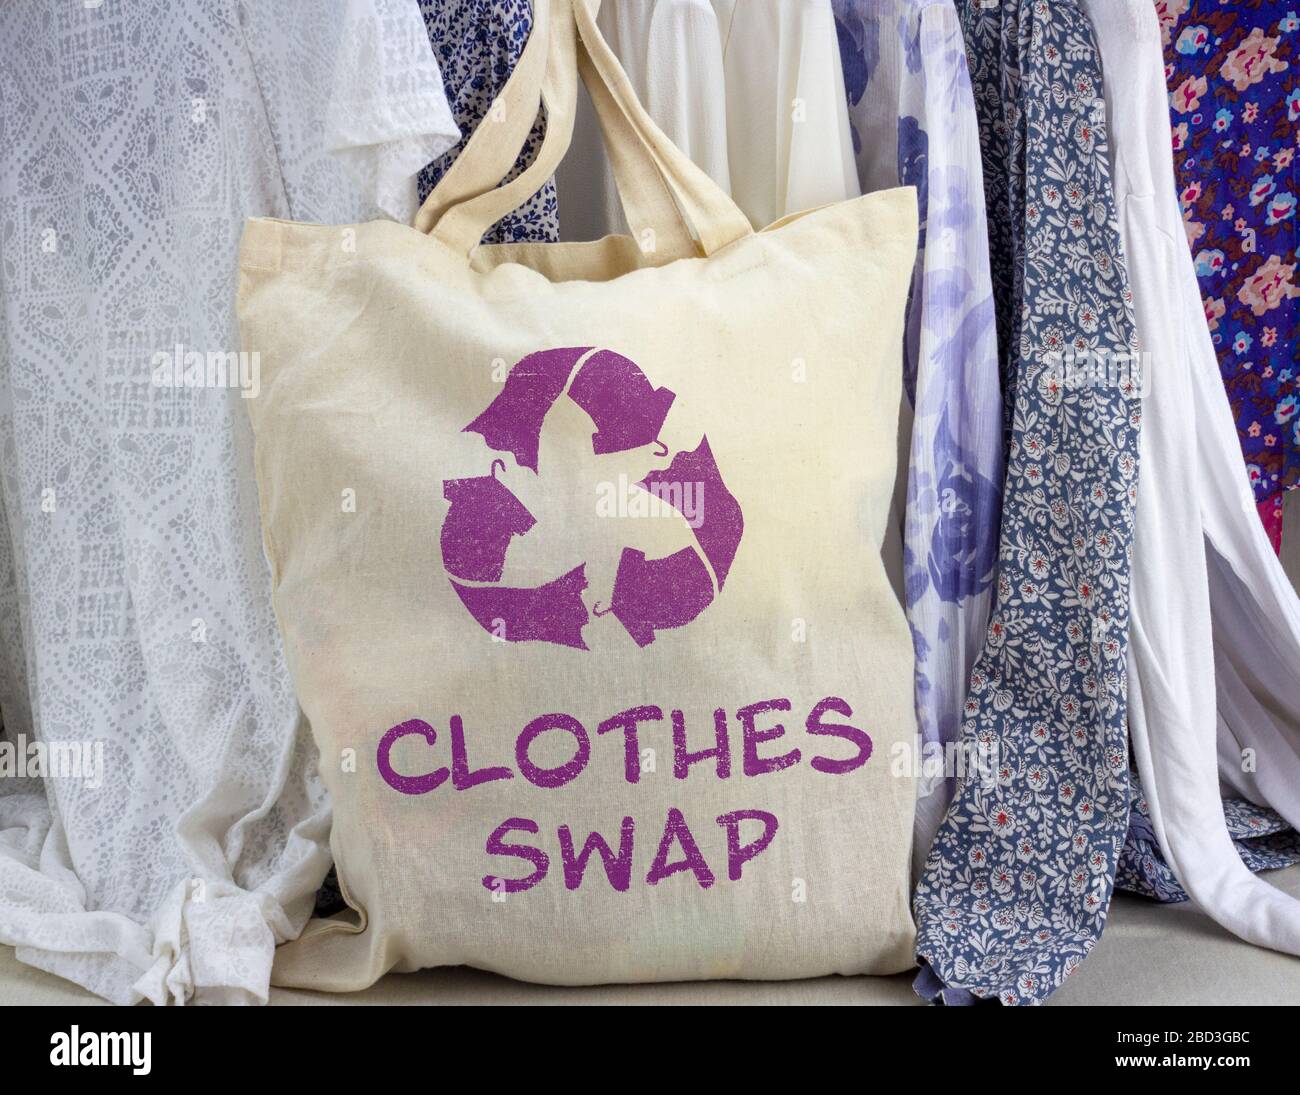 Ropa intercambie la bolsa reutilizable con el símbolo de reciclaje de tejidos delante de la gradilla de ropa. Recicle la ropa para una vida sostenible. Foto de stock